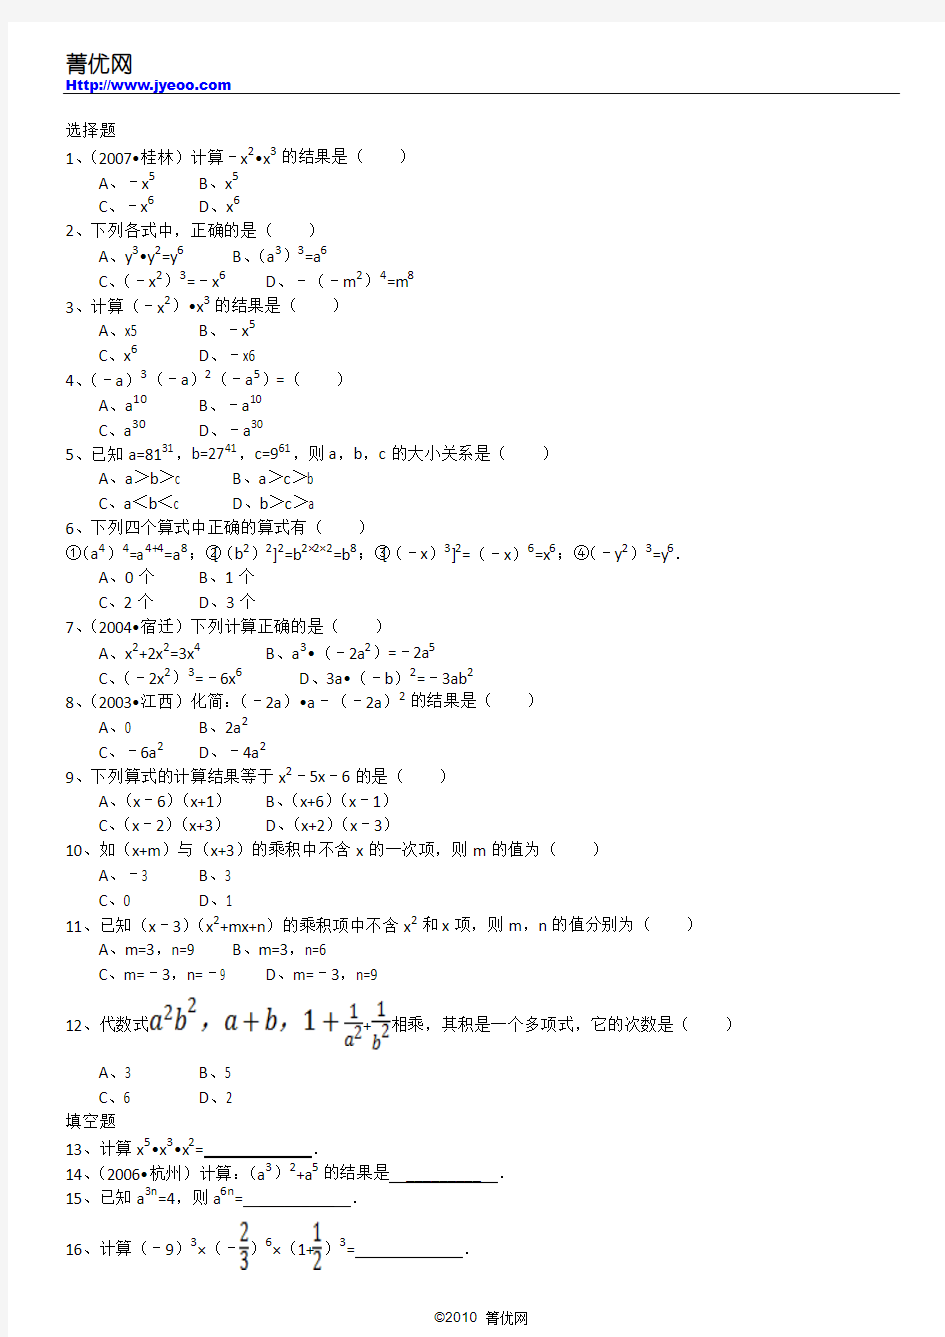 第15章《整式的乘除与因式分解》易错题集(01)：15.1 整式的乘法